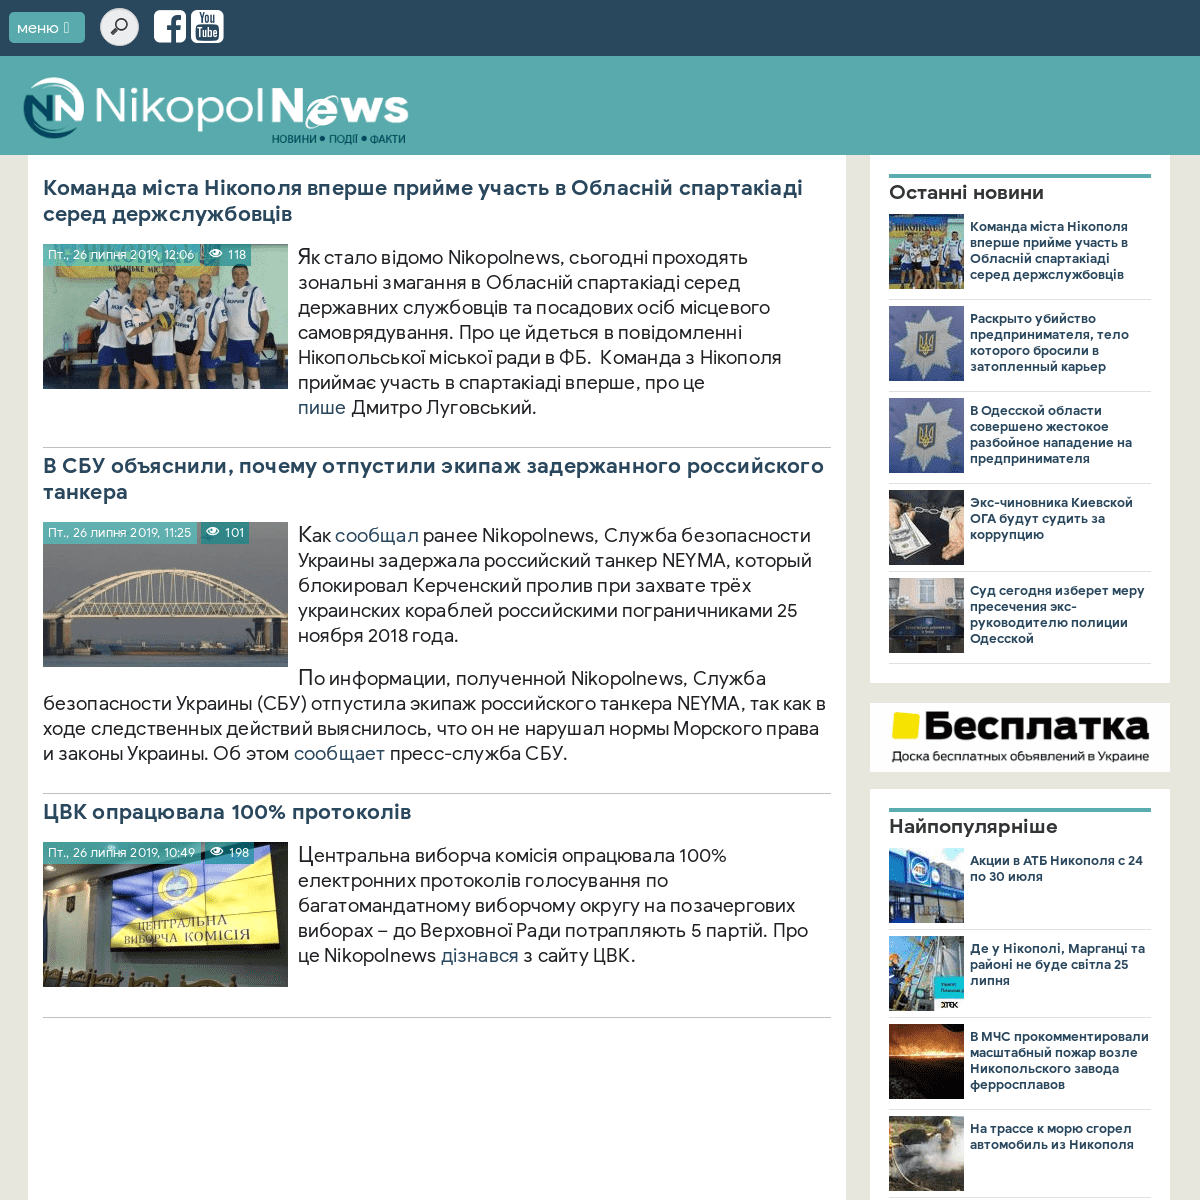 NikopolNews — Новини Нікополя сьогодні